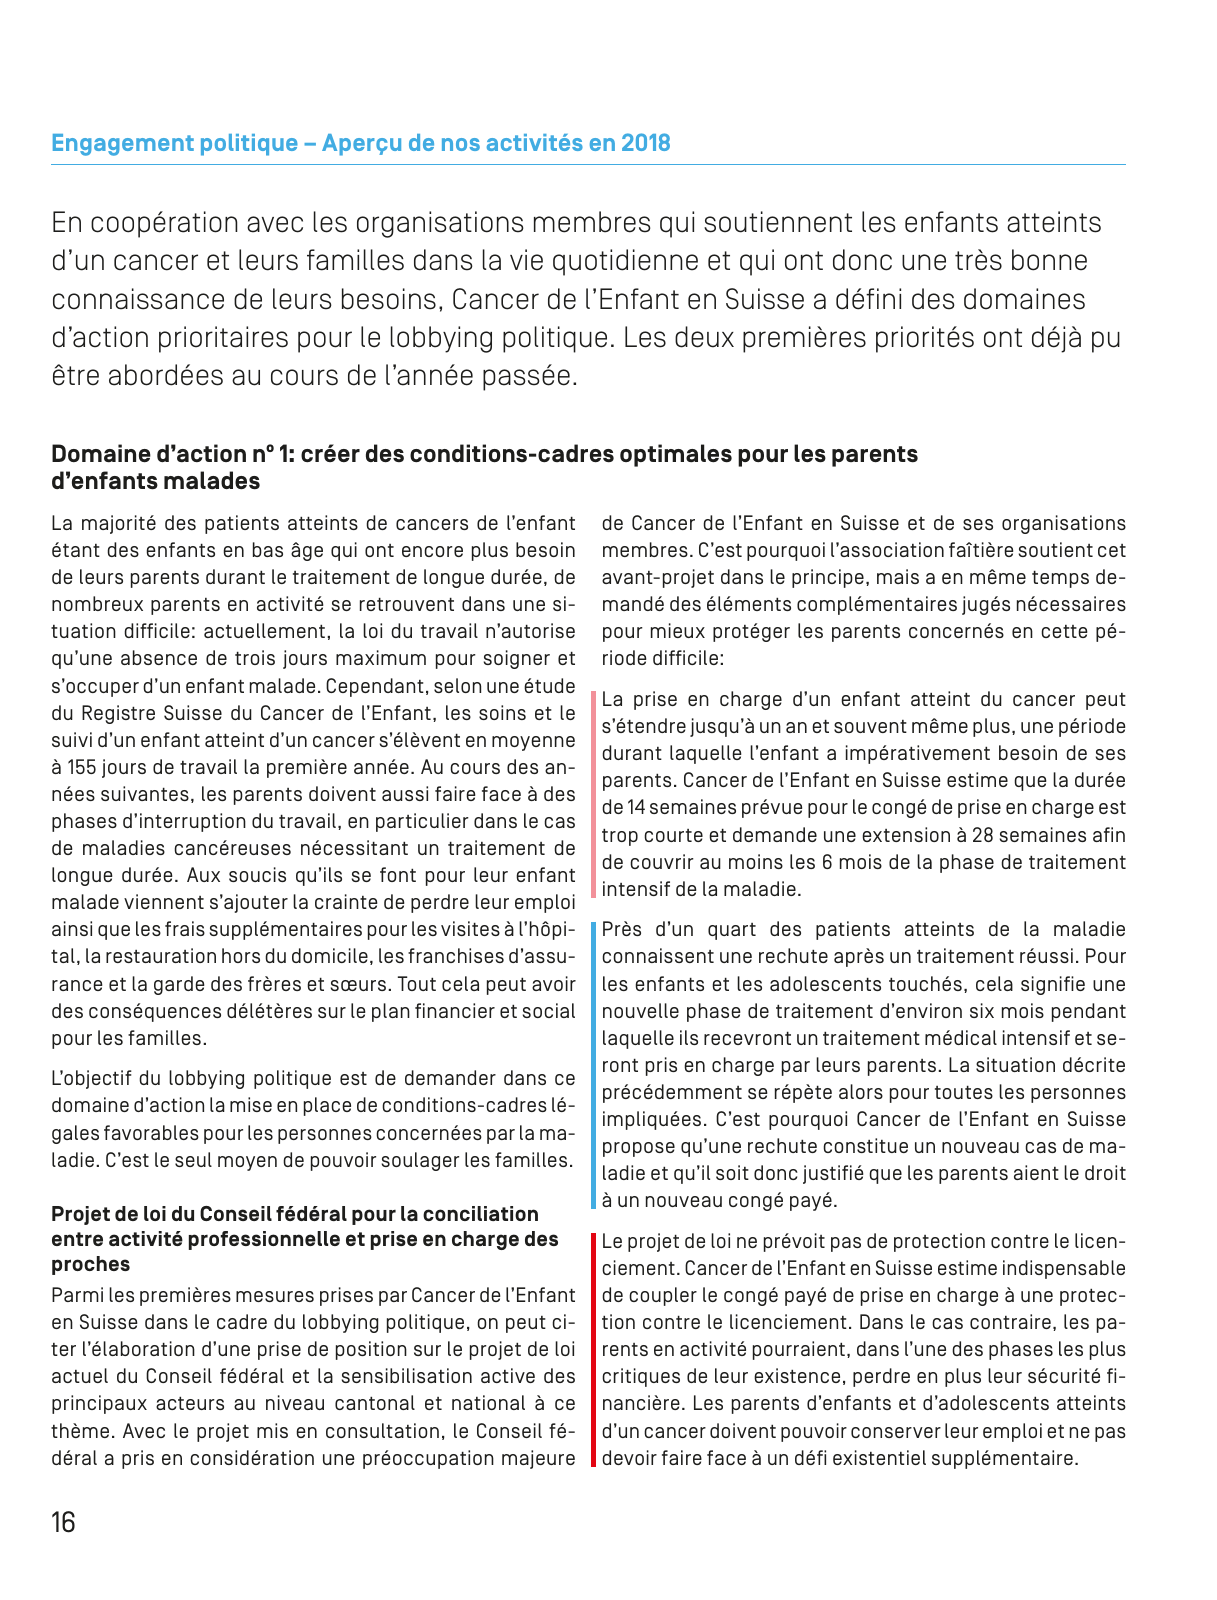 Vorschau Jahresbericht 2018_französisch Seite 16